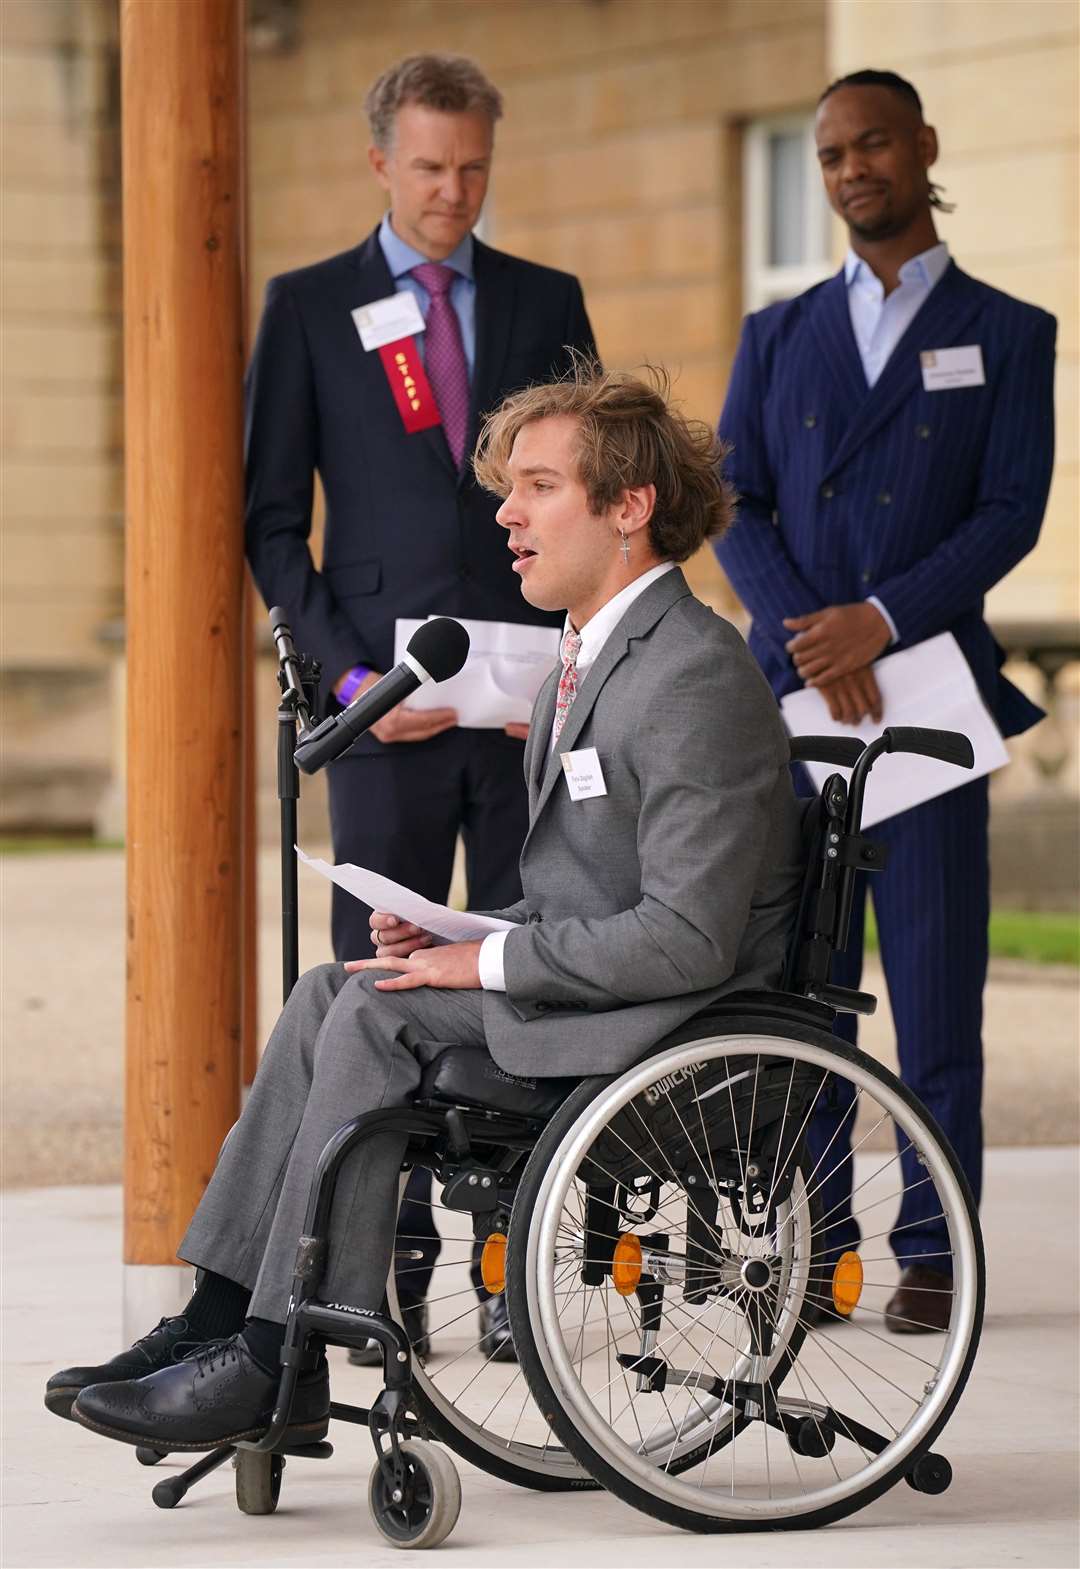 Duke of Edinburgh Award alumnus Felix Daglish makes a speech on the steps of Buckingham Palace (Jonathan Brady/PA)